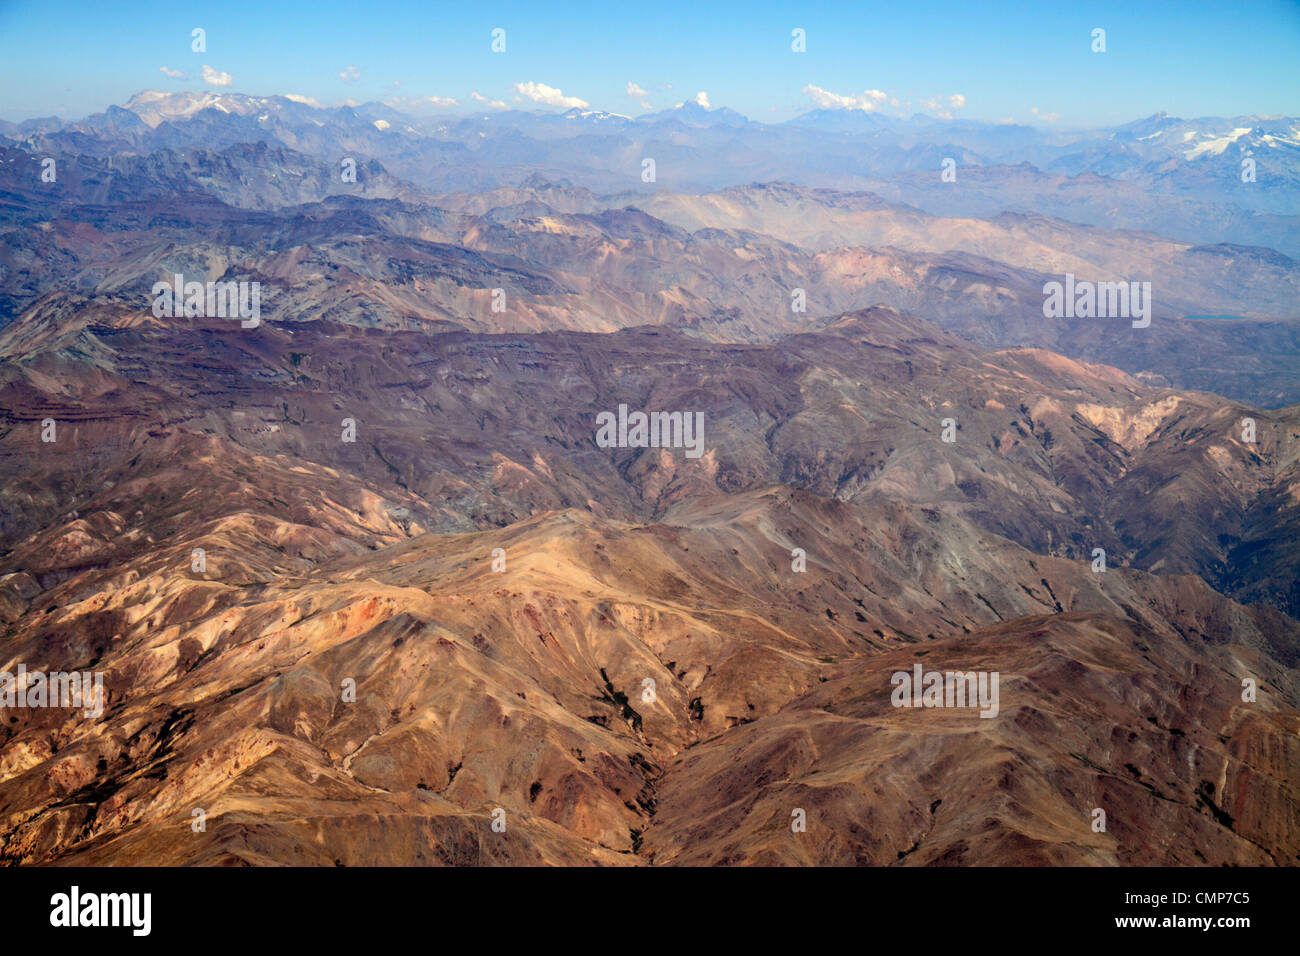 Santiago Chile,Andes Mountains,LAN Airlines,vol à Mendoza,vue de siège de fenêtre,vue aérienne de dessus,science,géographie,gamme,topographie,brume Banque D'Images